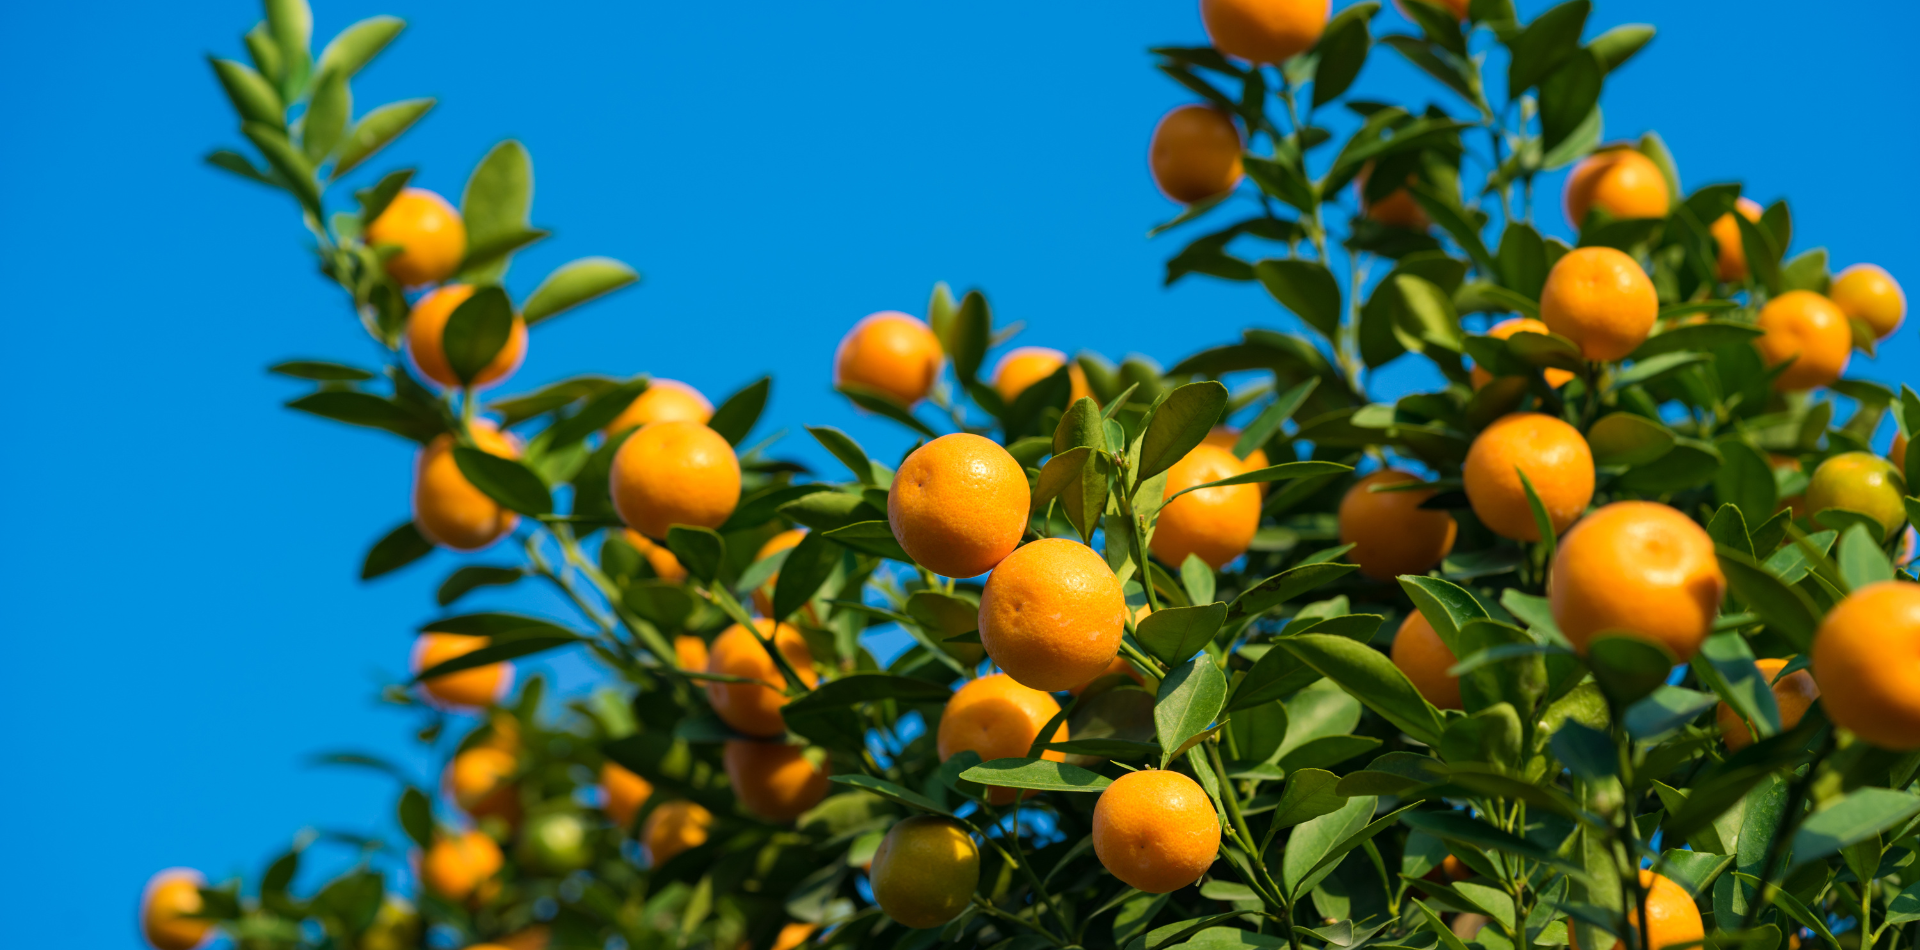 Citrus Tree with oranges